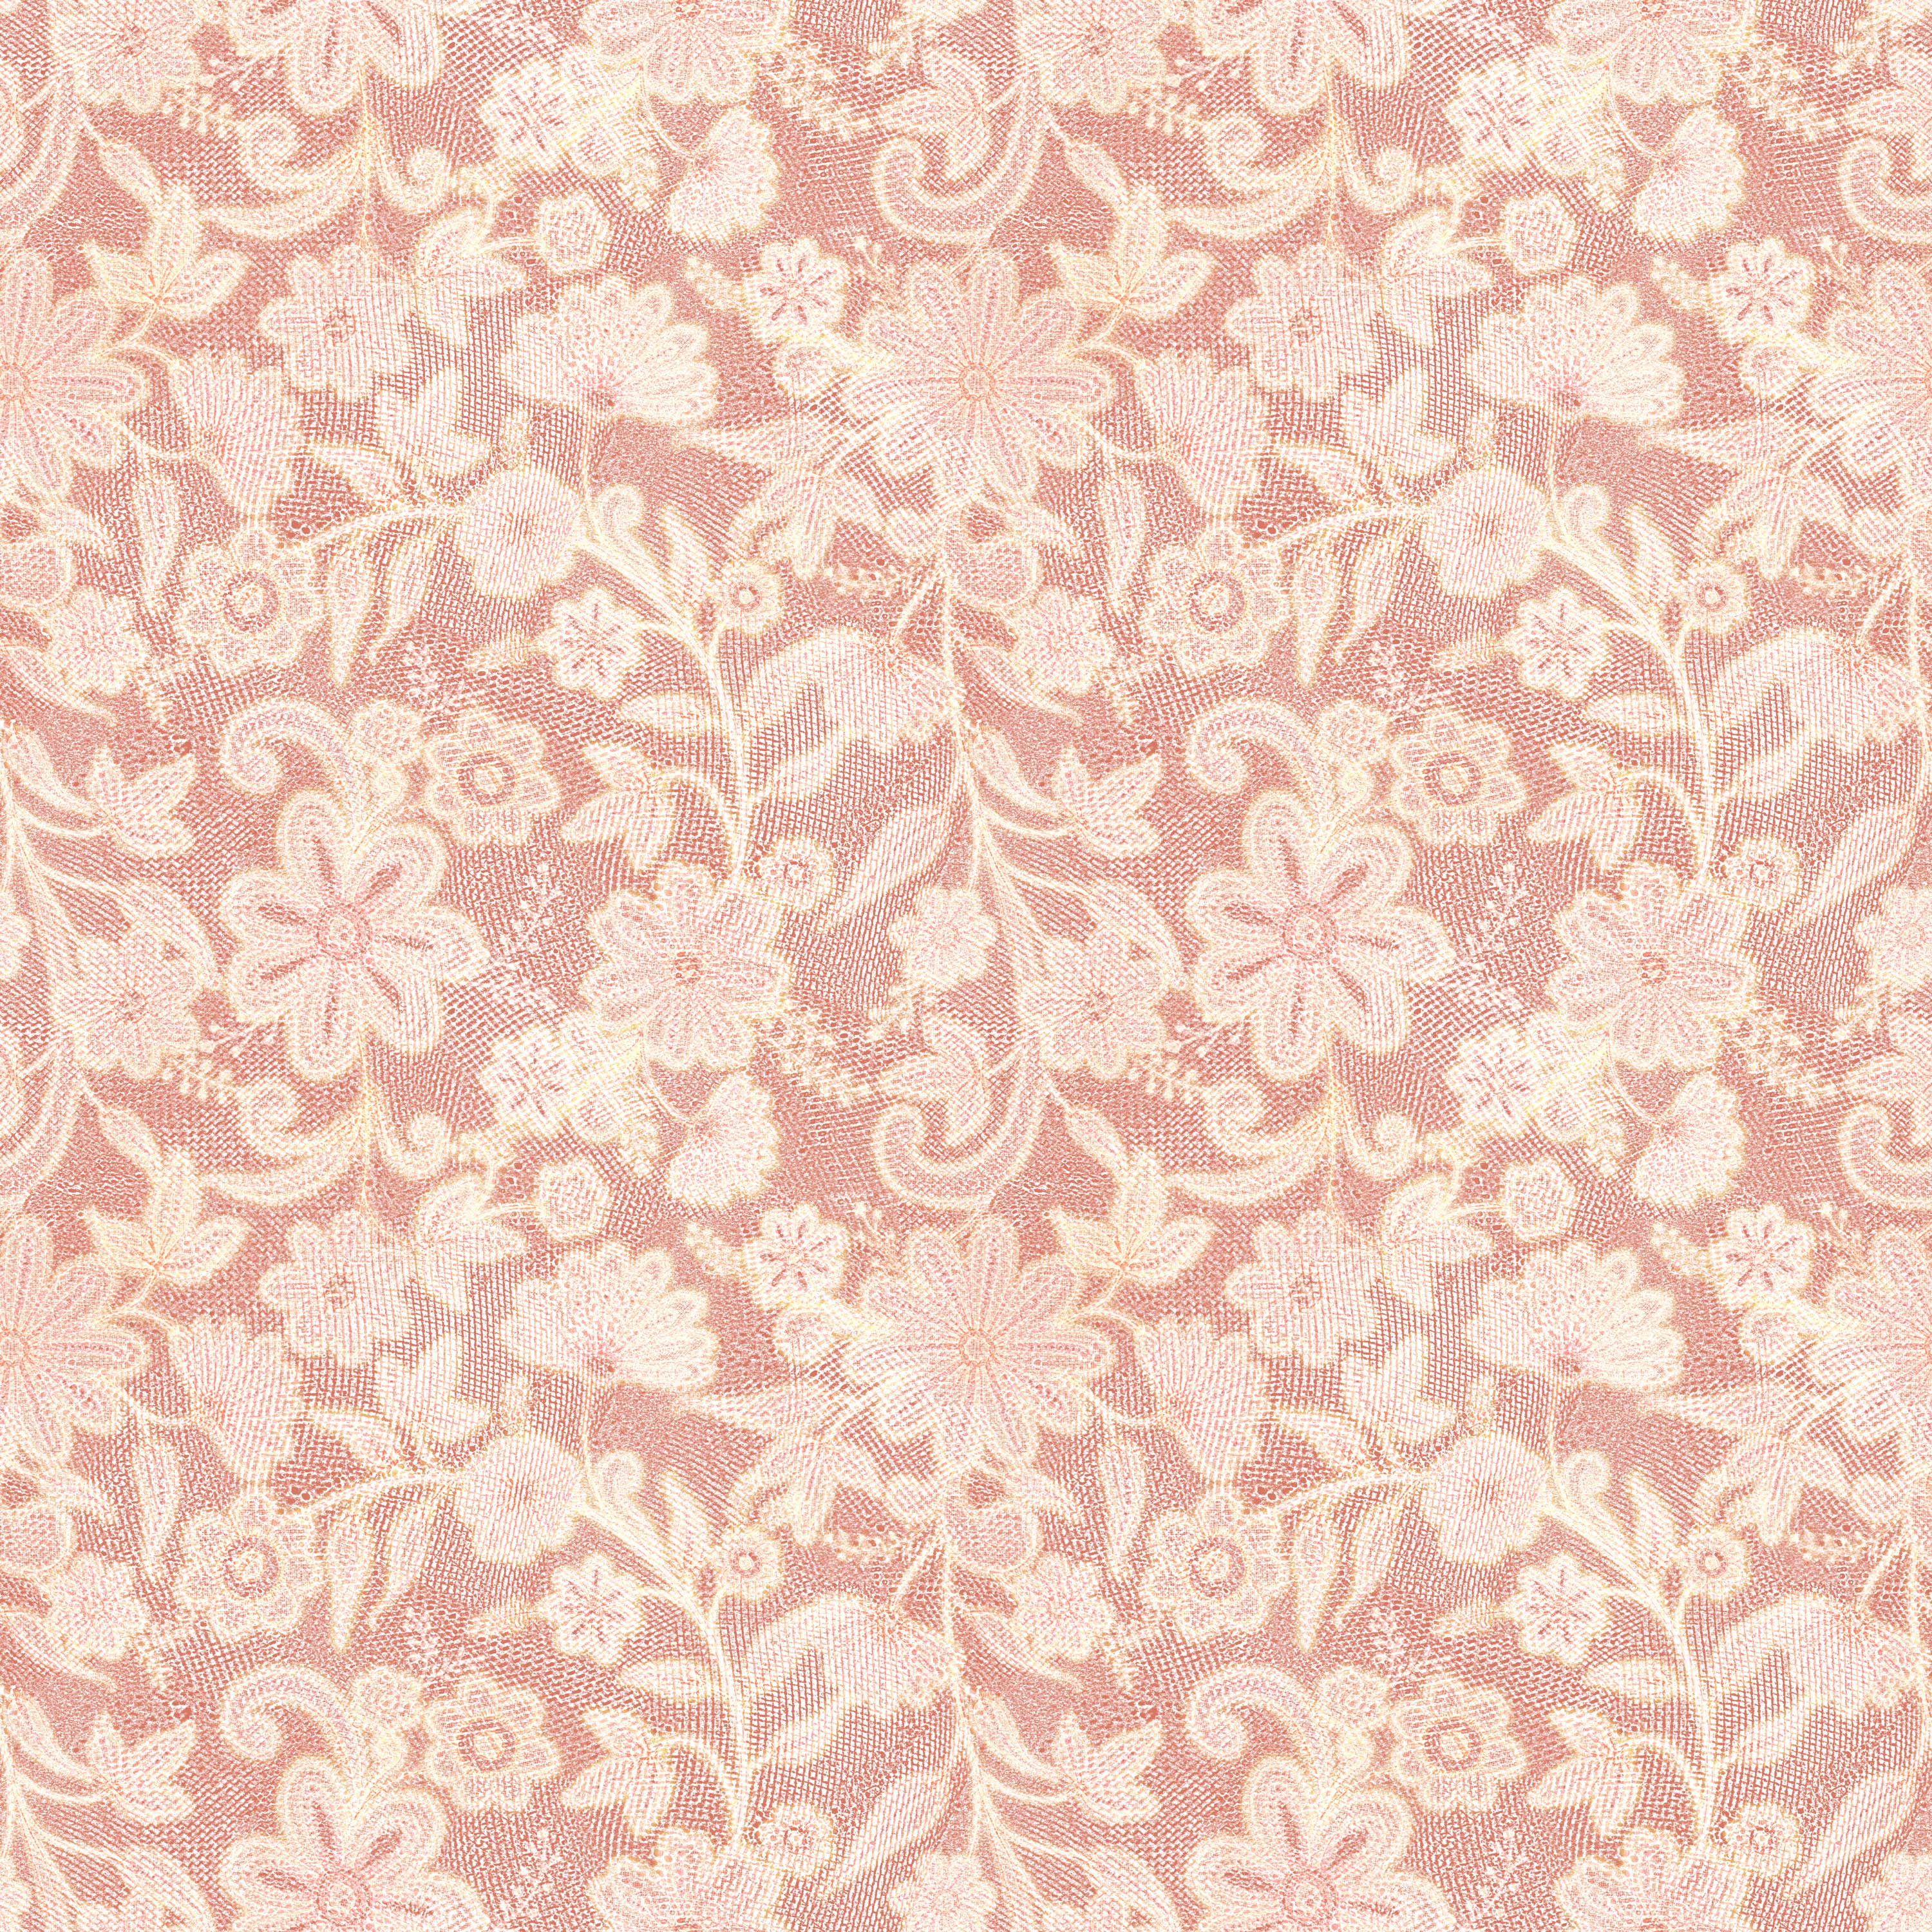 壁紙 背景イラスト 花の模様 柄 パターン No 053 ピンク レース生地